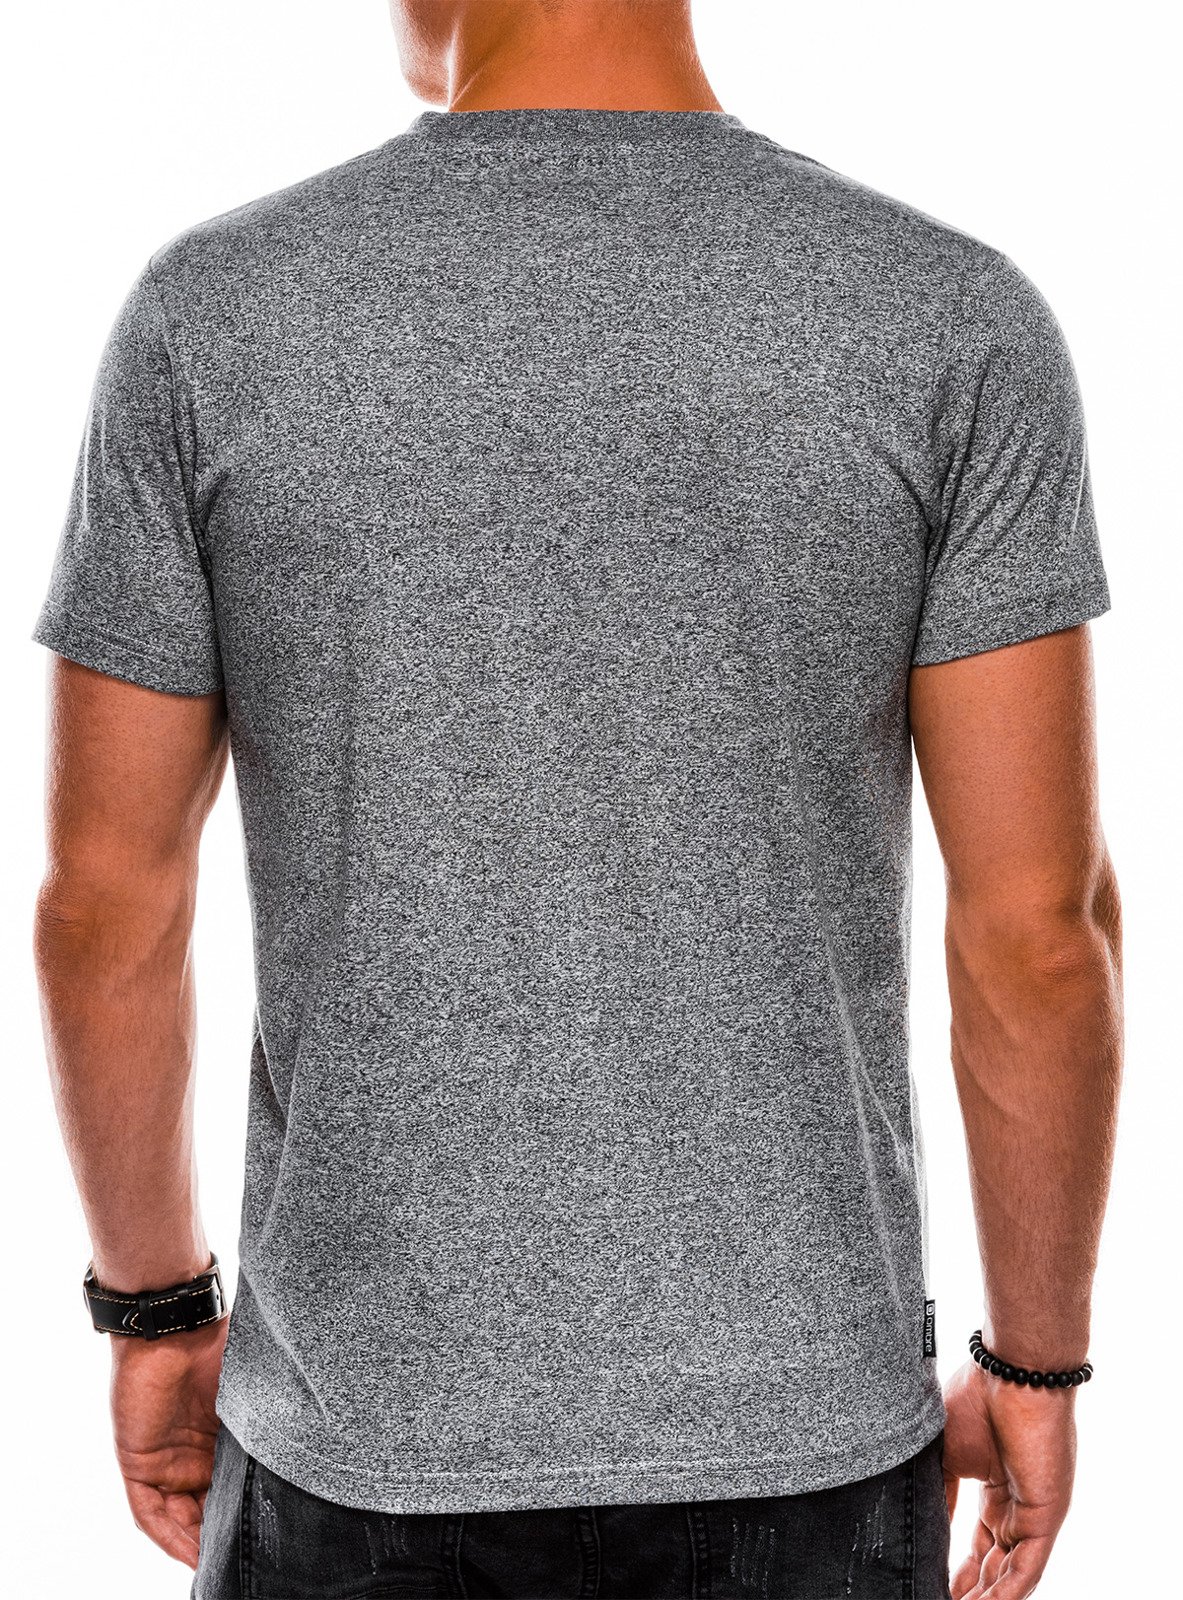 Men's plain t-shirt S1047 - grey | MODONE wholesale - Clothing For Men